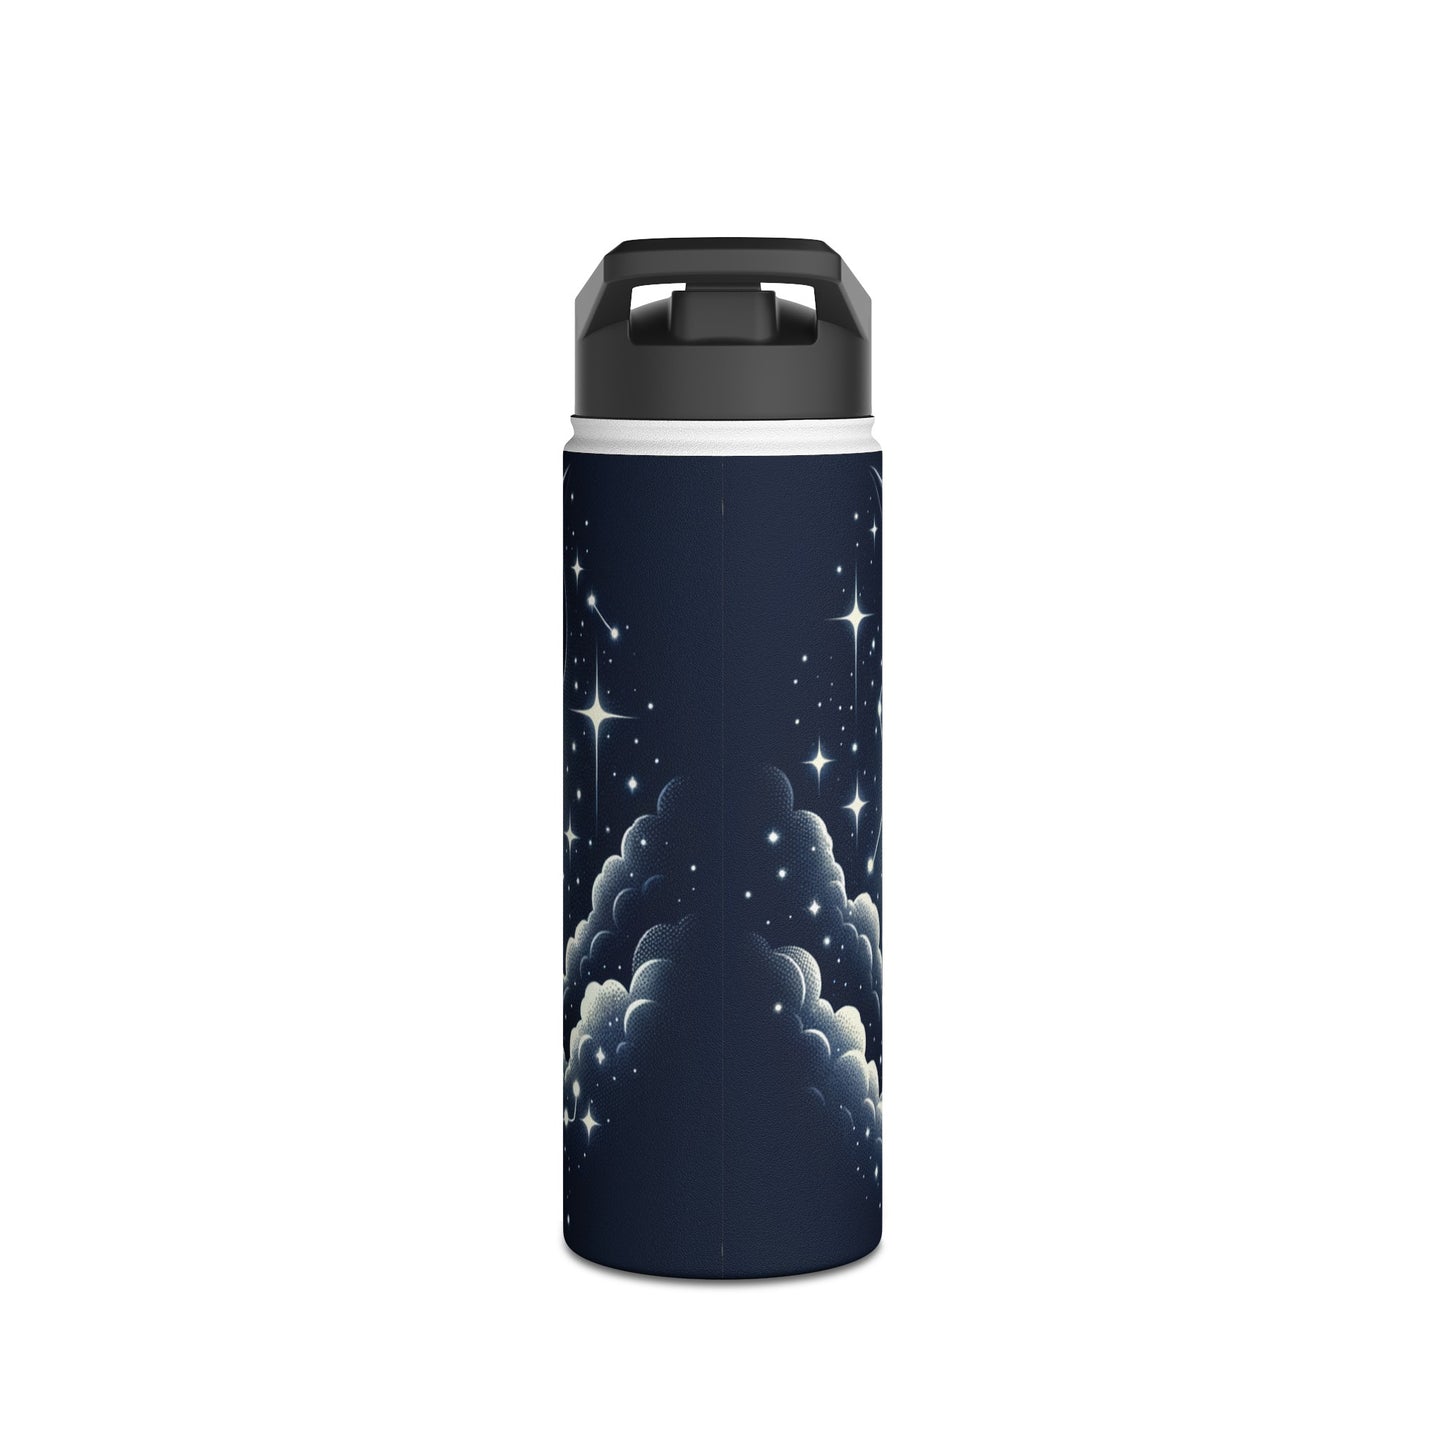 Celestial Taurine Constellation - Water Bottle